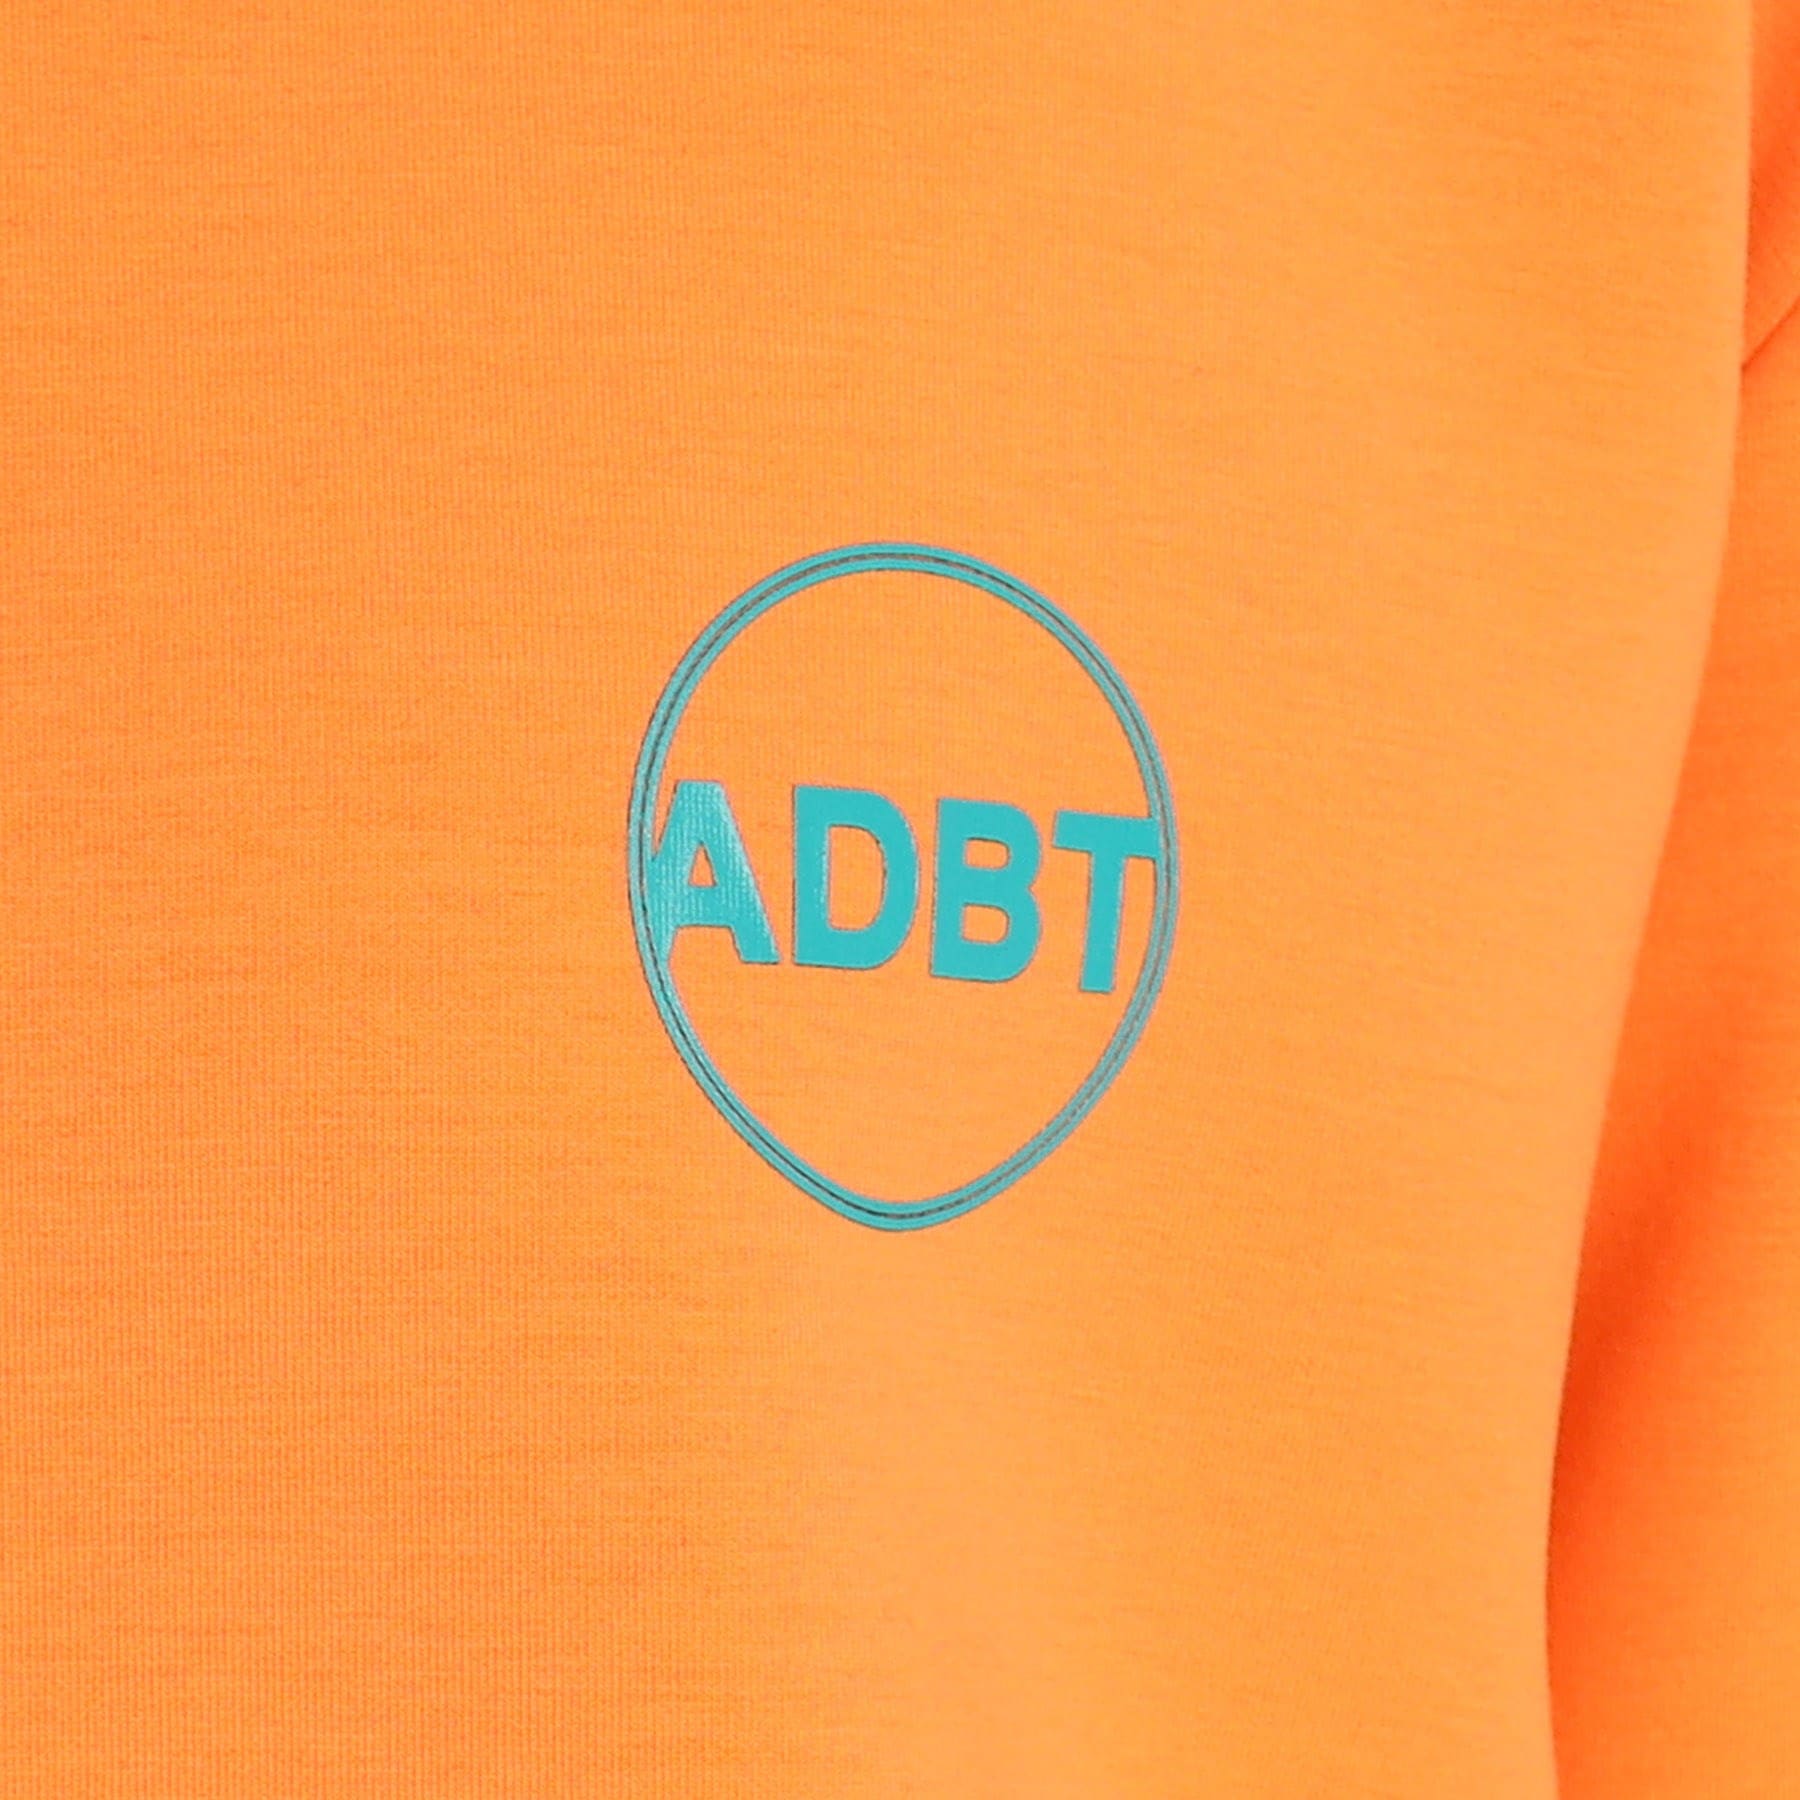 アダバット(レディース)(adabat(Ladies))の【ADBT】袖ロゴデザイン 長袖クルーネックトレーナー12